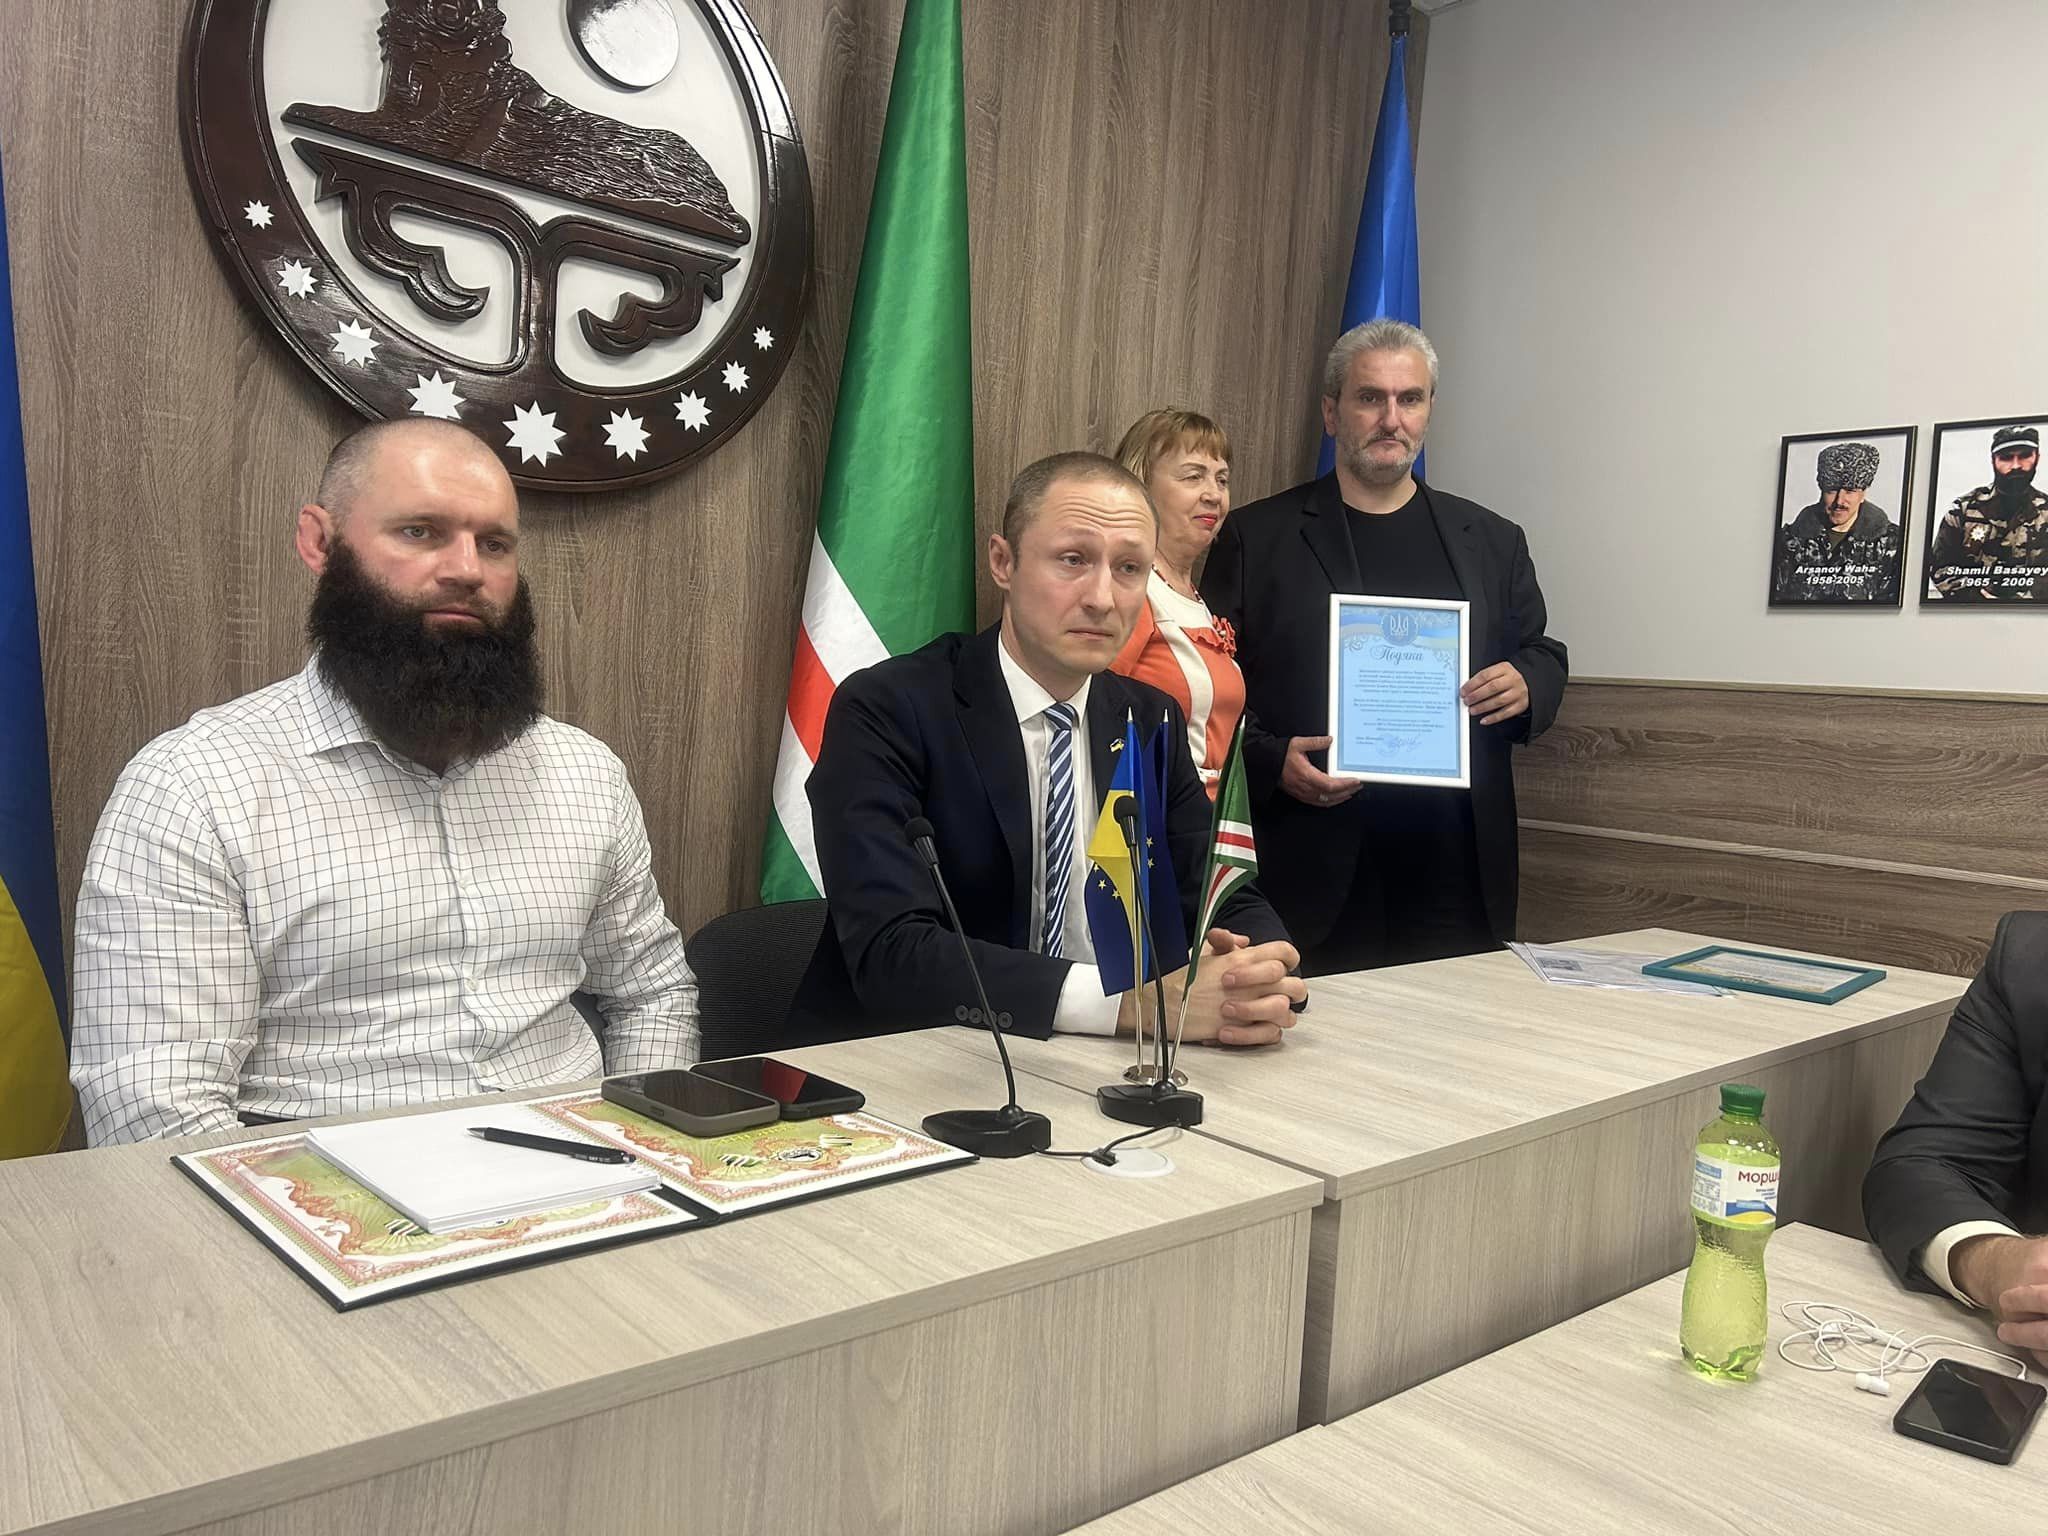 Известный американский фотограф и меценат Сергей Мельникофф принят в гражданство Ичкерии, а Борис Стомахин получил новый чеченский паспорт